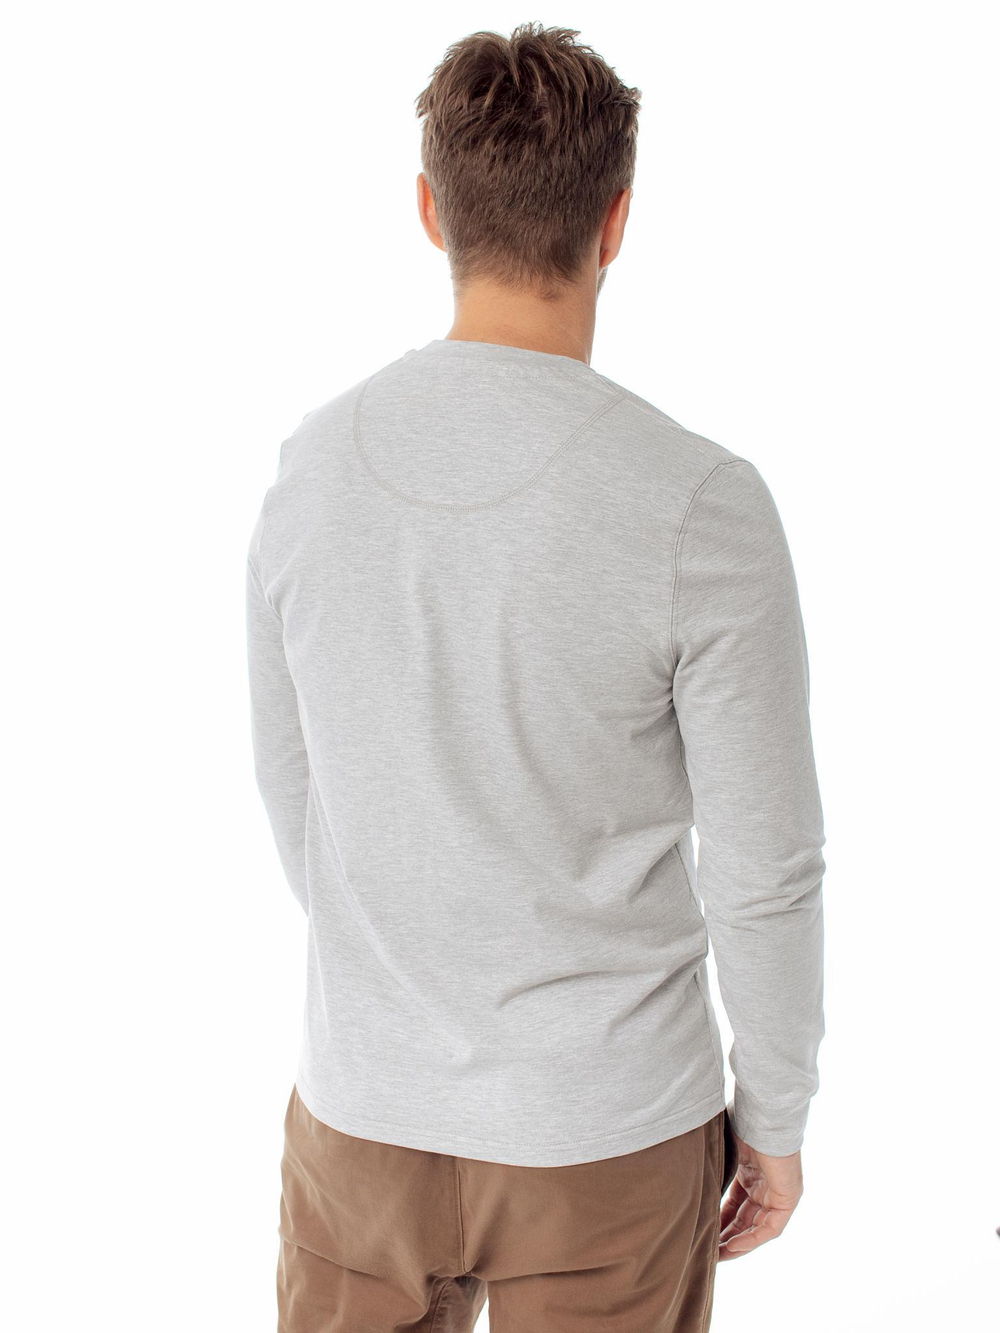 Лонгслив мужской серый, серая футболка с рукавами